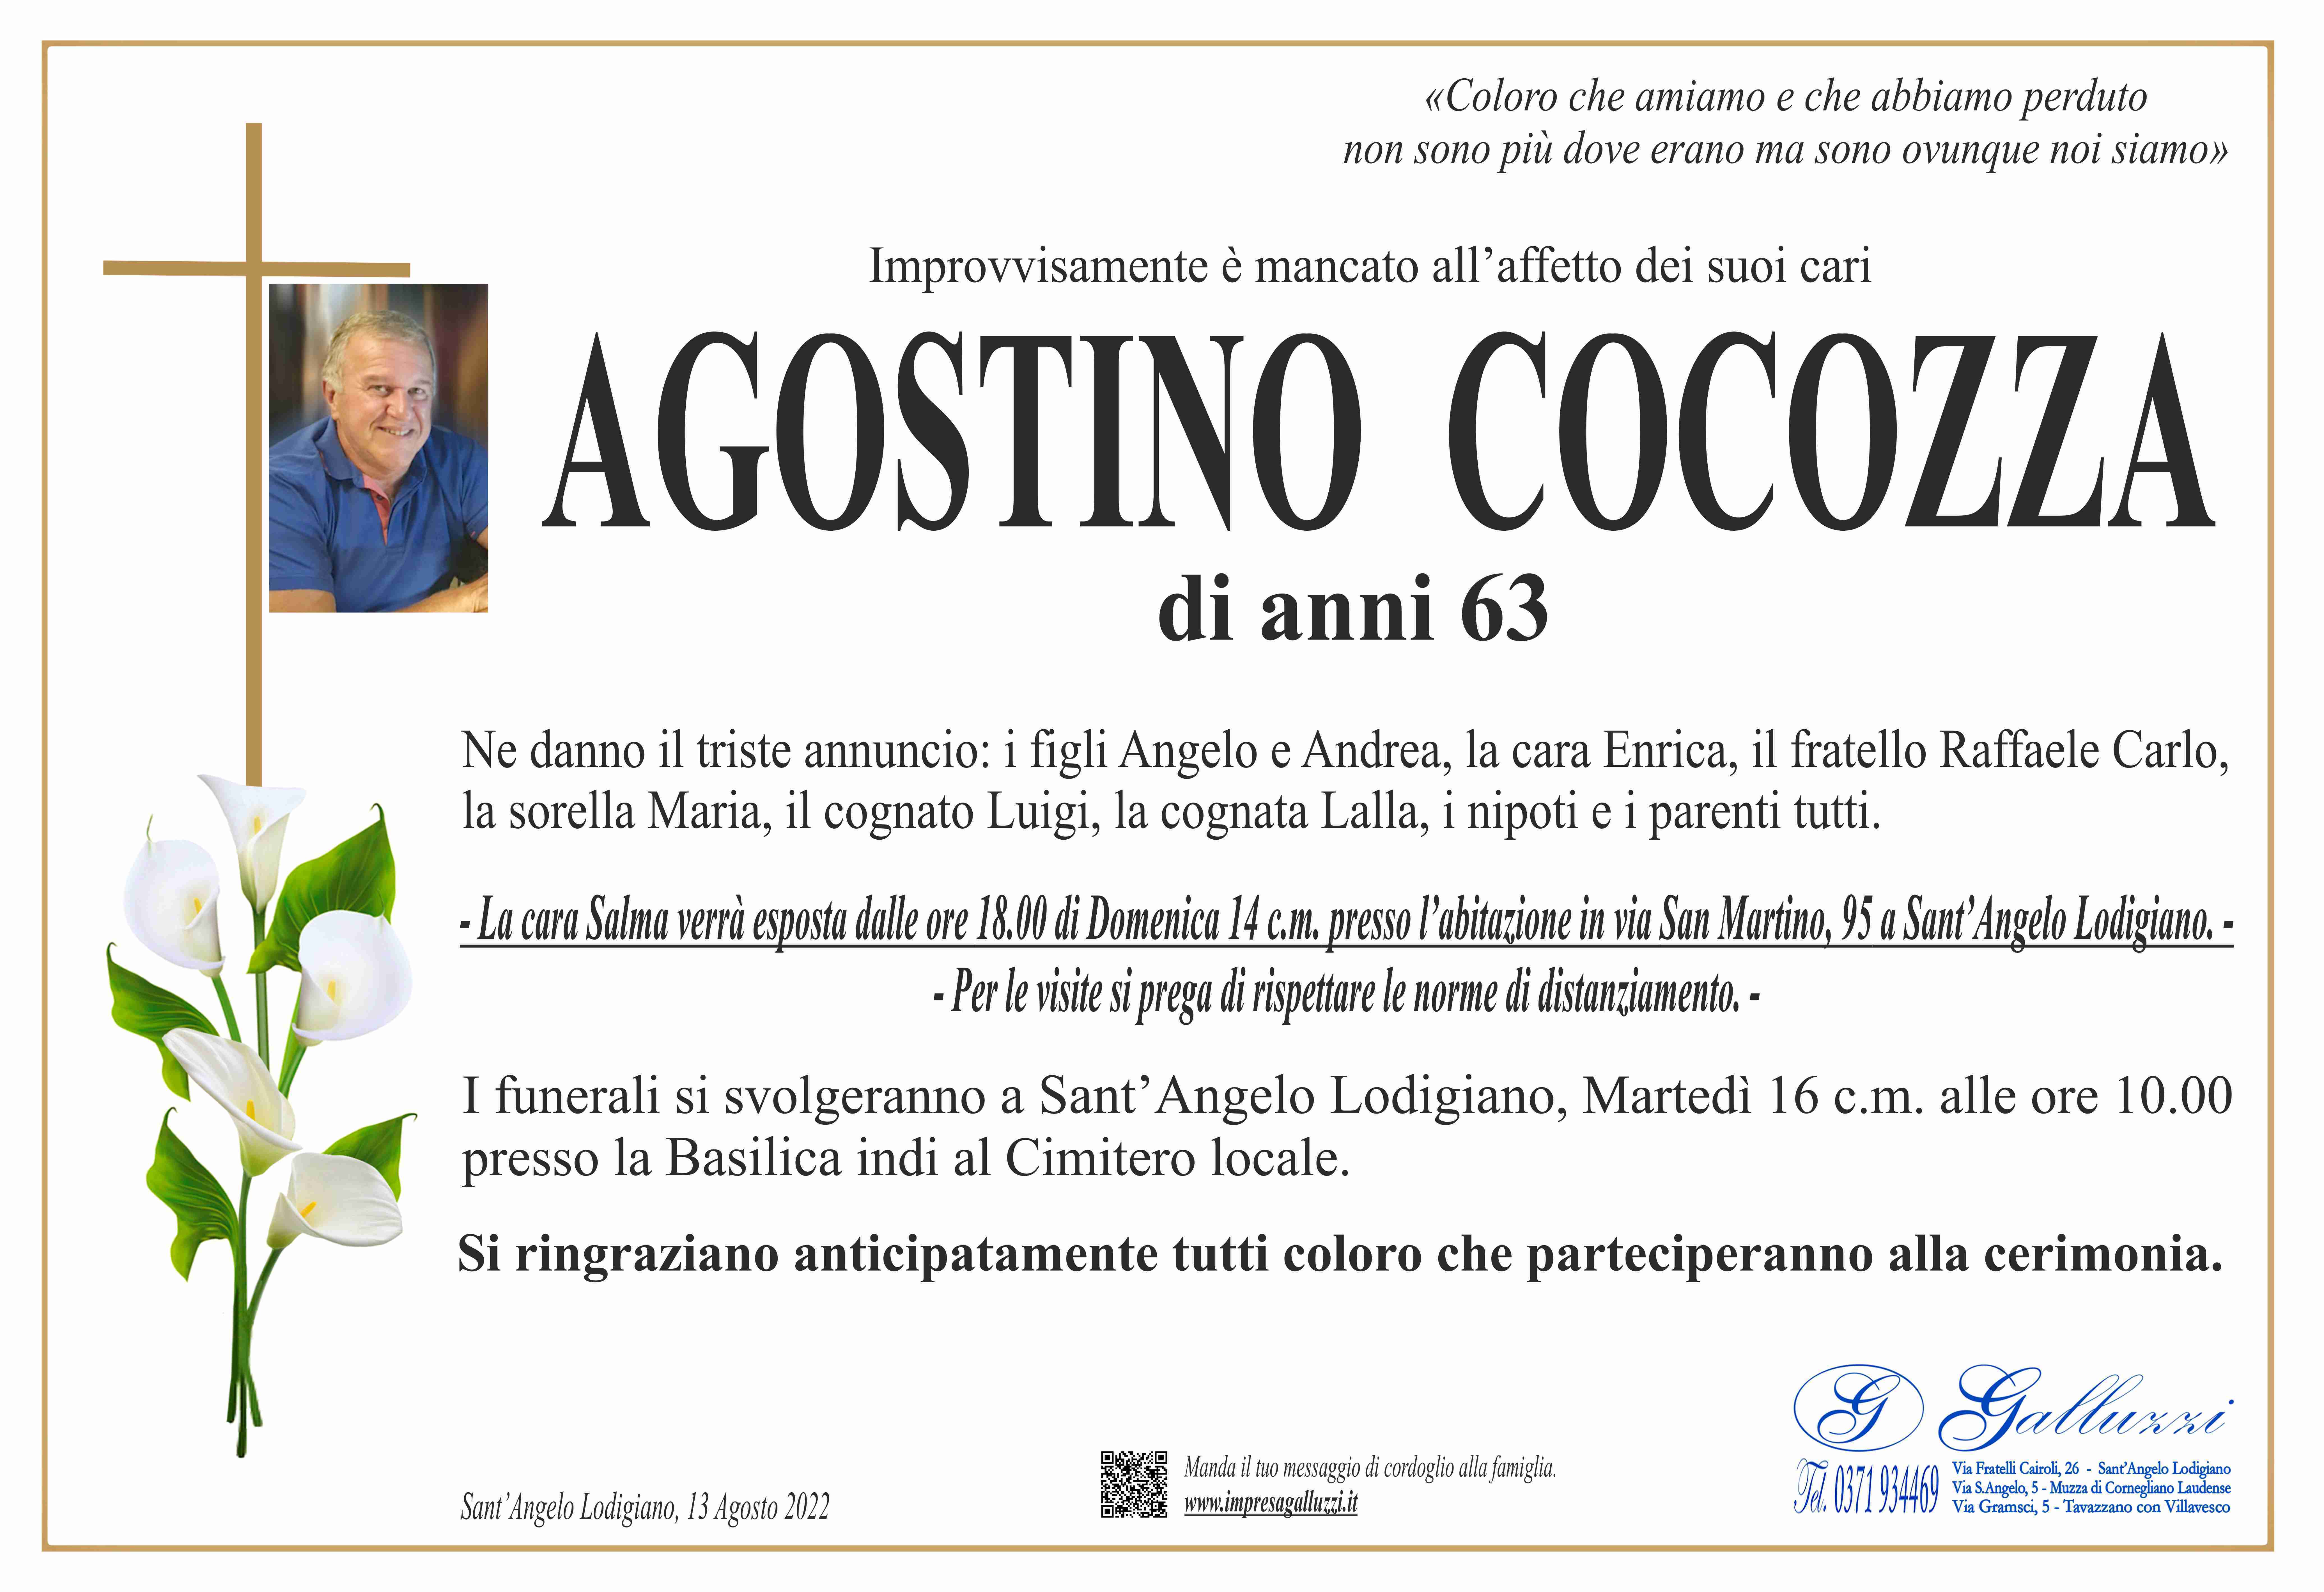 Agostino Cocozza